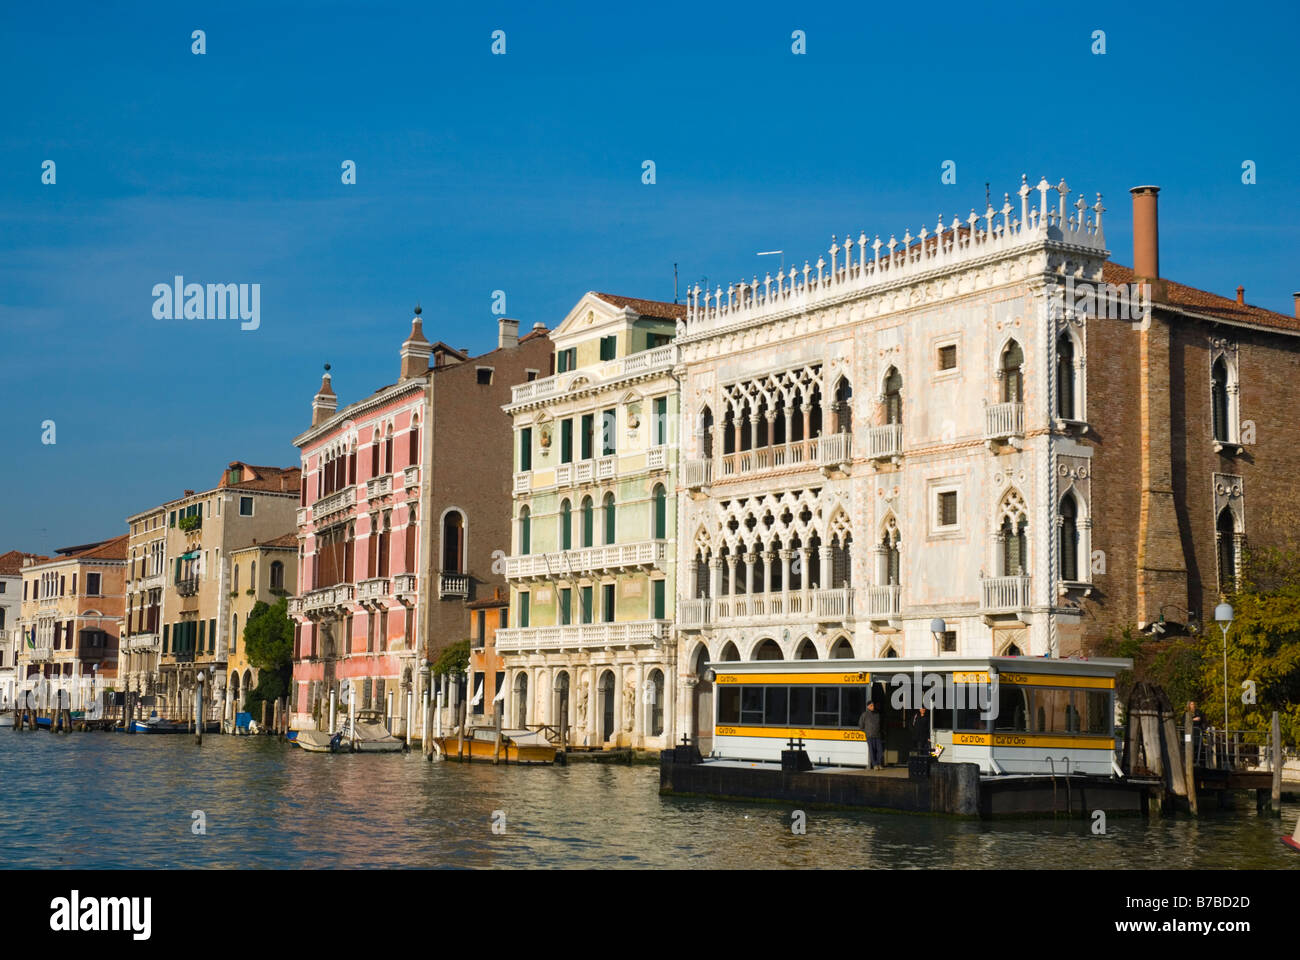 Ca d Oro vaporetti stop in Cannaregio district of Venice Italy Europe Stock Photo